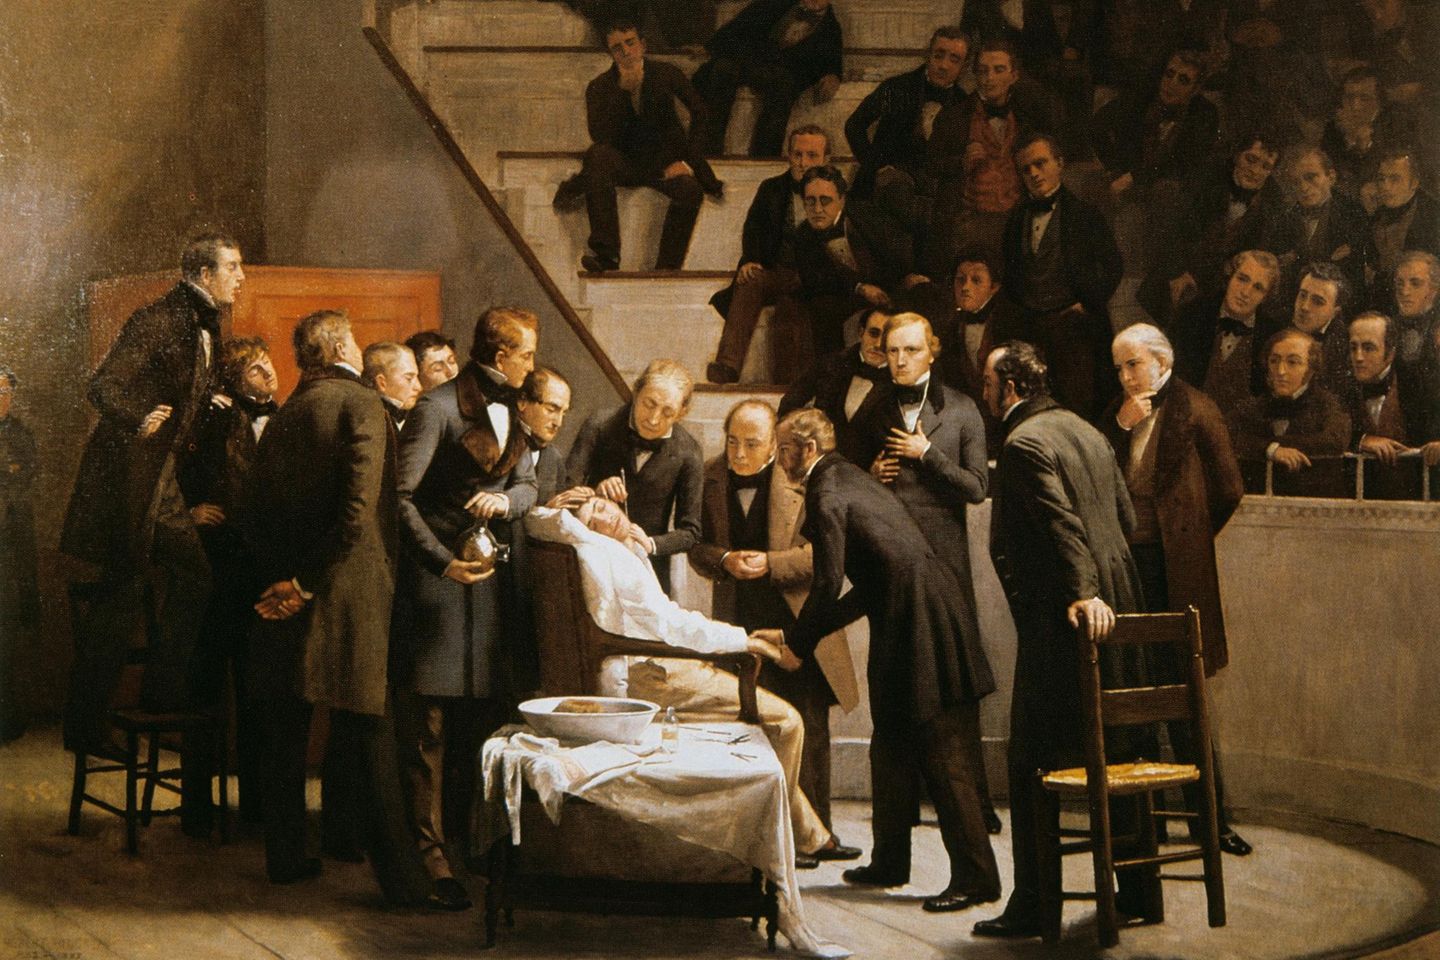 In Boston gelingt 1846 erstmals eine Operation unter Narkose. Zuvor erlitten Patienten jeglichen medizinischen Eingriff bei vollem Bewusstsein